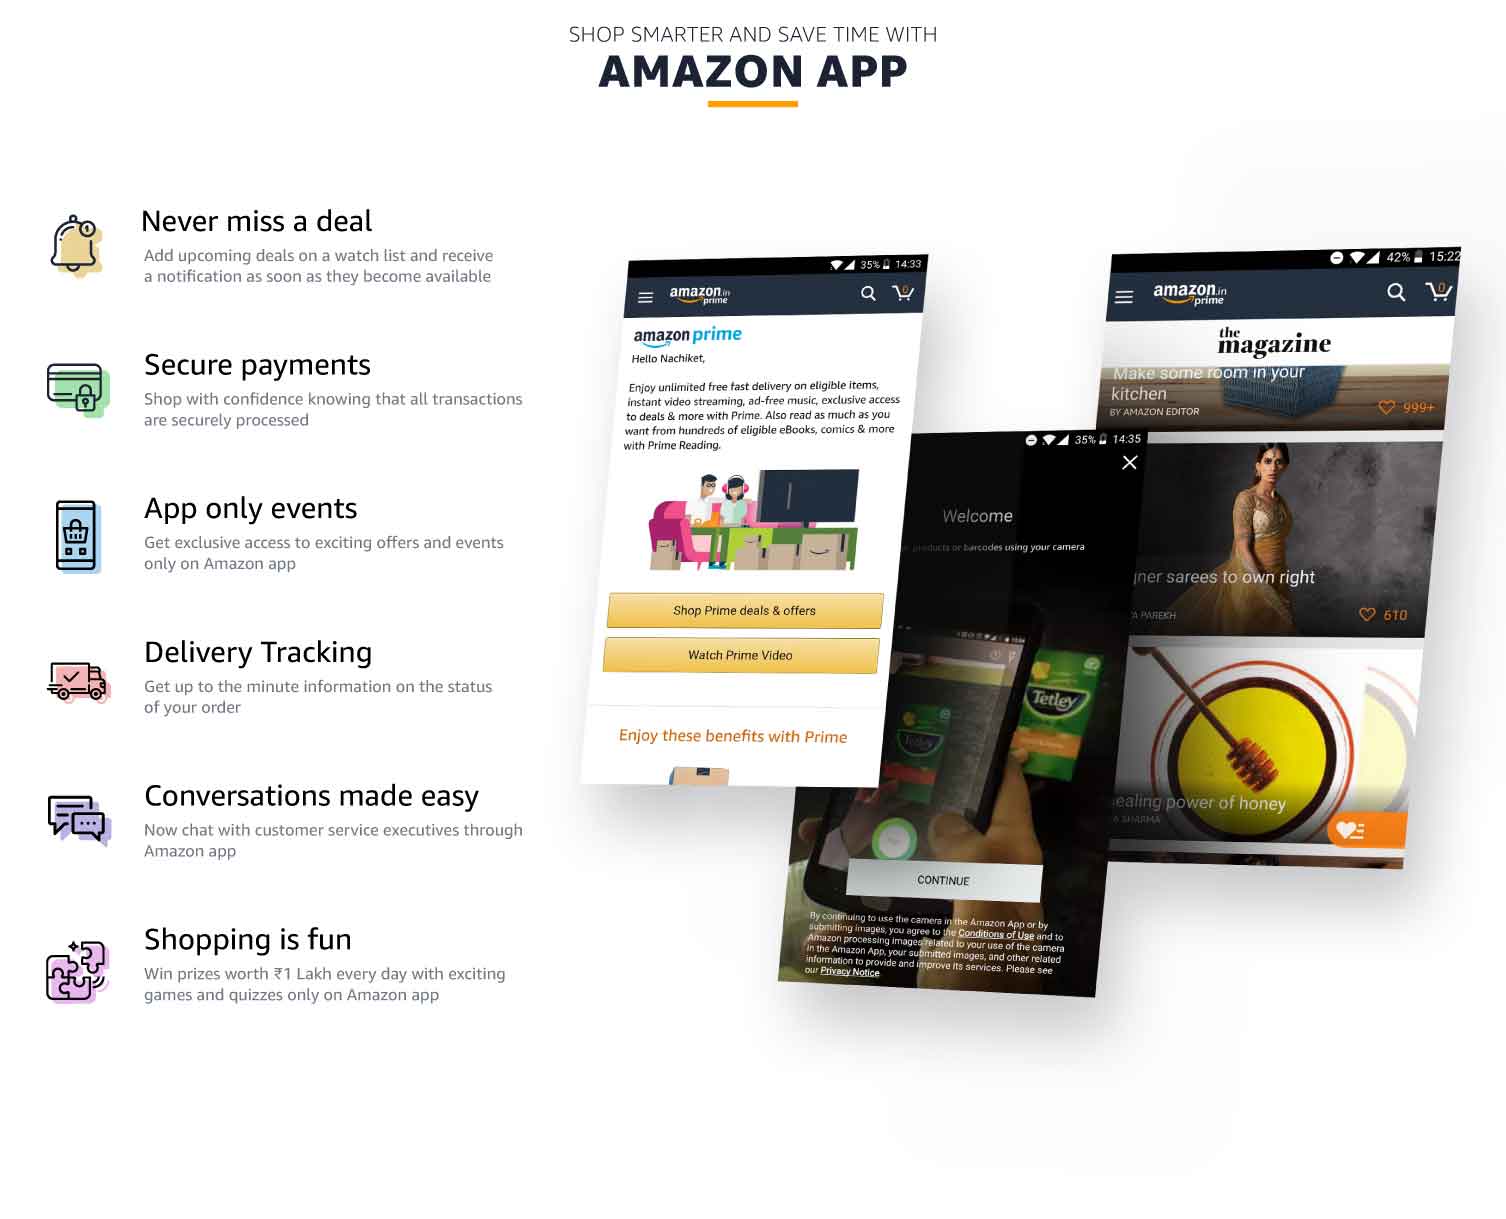 Amazon-app-deals